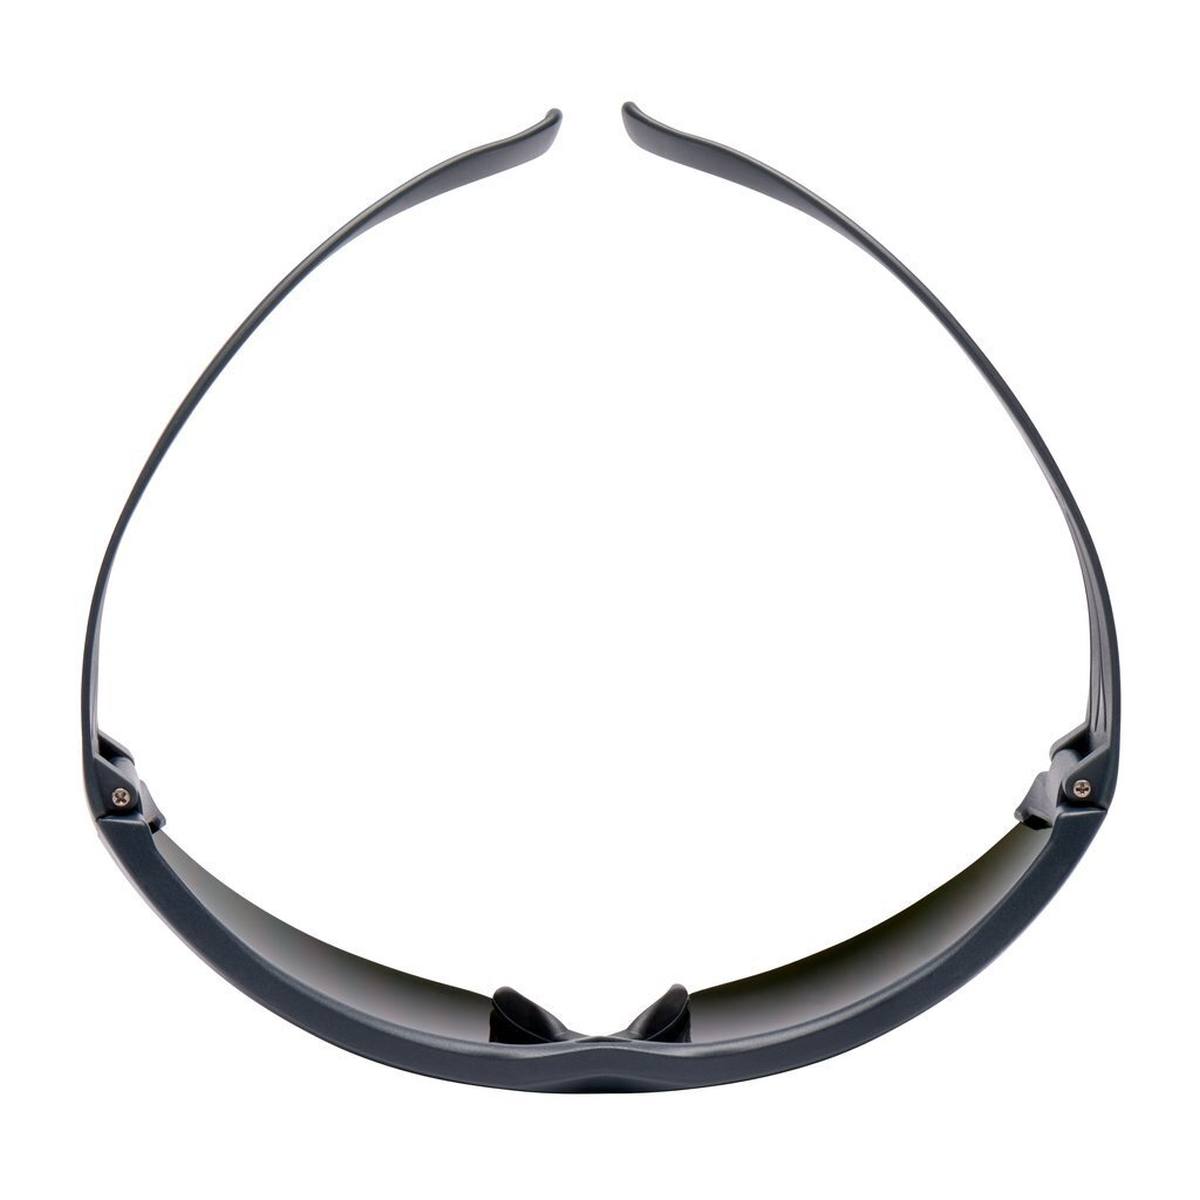 occhiali di sicurezza 3M SecureFit 600, aste grigie, rivestimento antigraffio, livello di protezione delle lenti per saldatura 5.0, SF650AS-EU